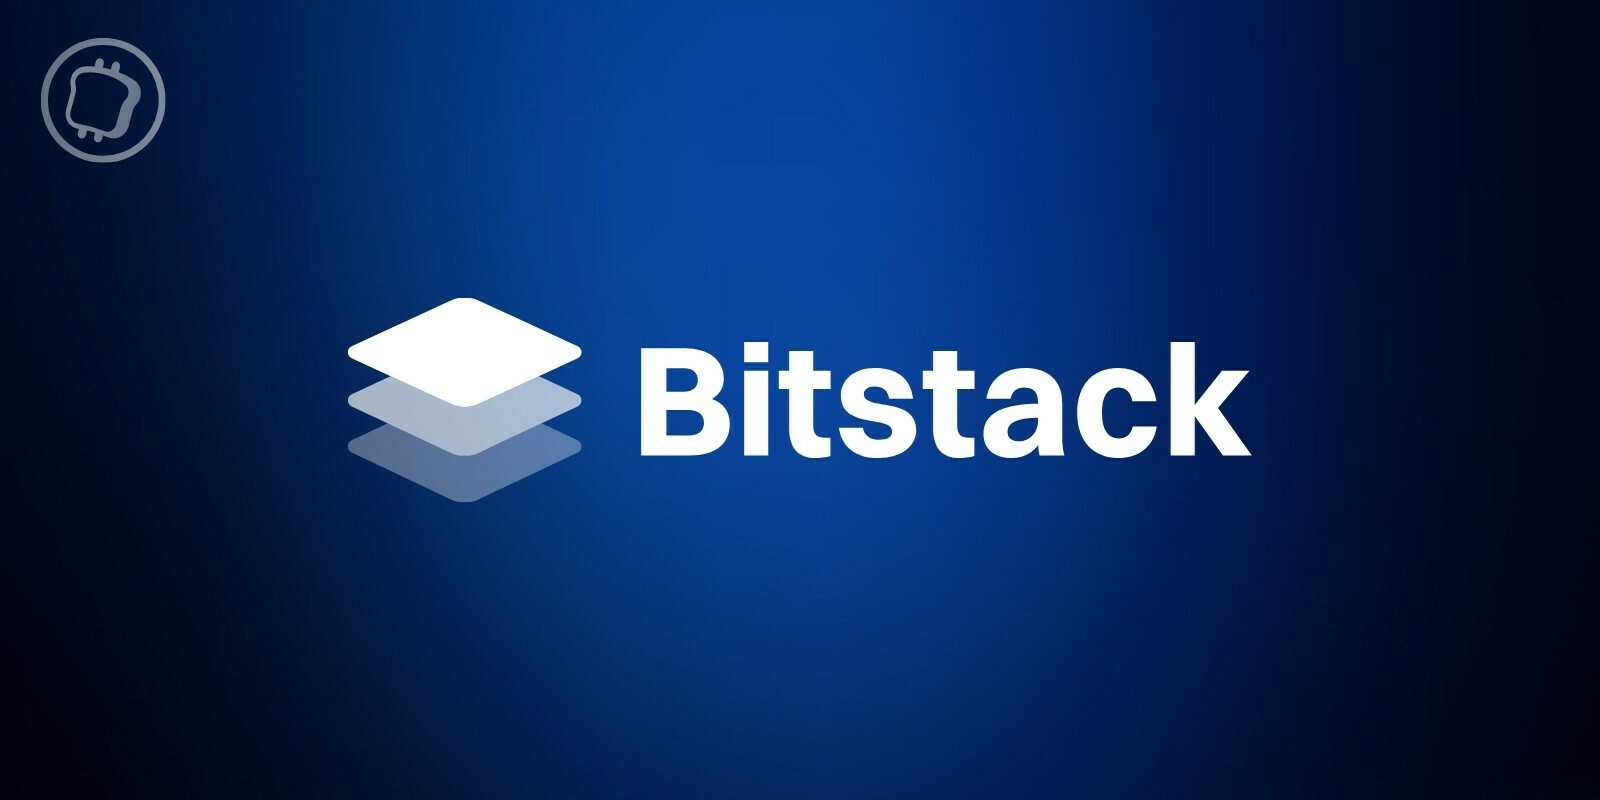 Bitstack rejoint l'accélérateur de startups Y Combinator et lance officiellement son application mobile